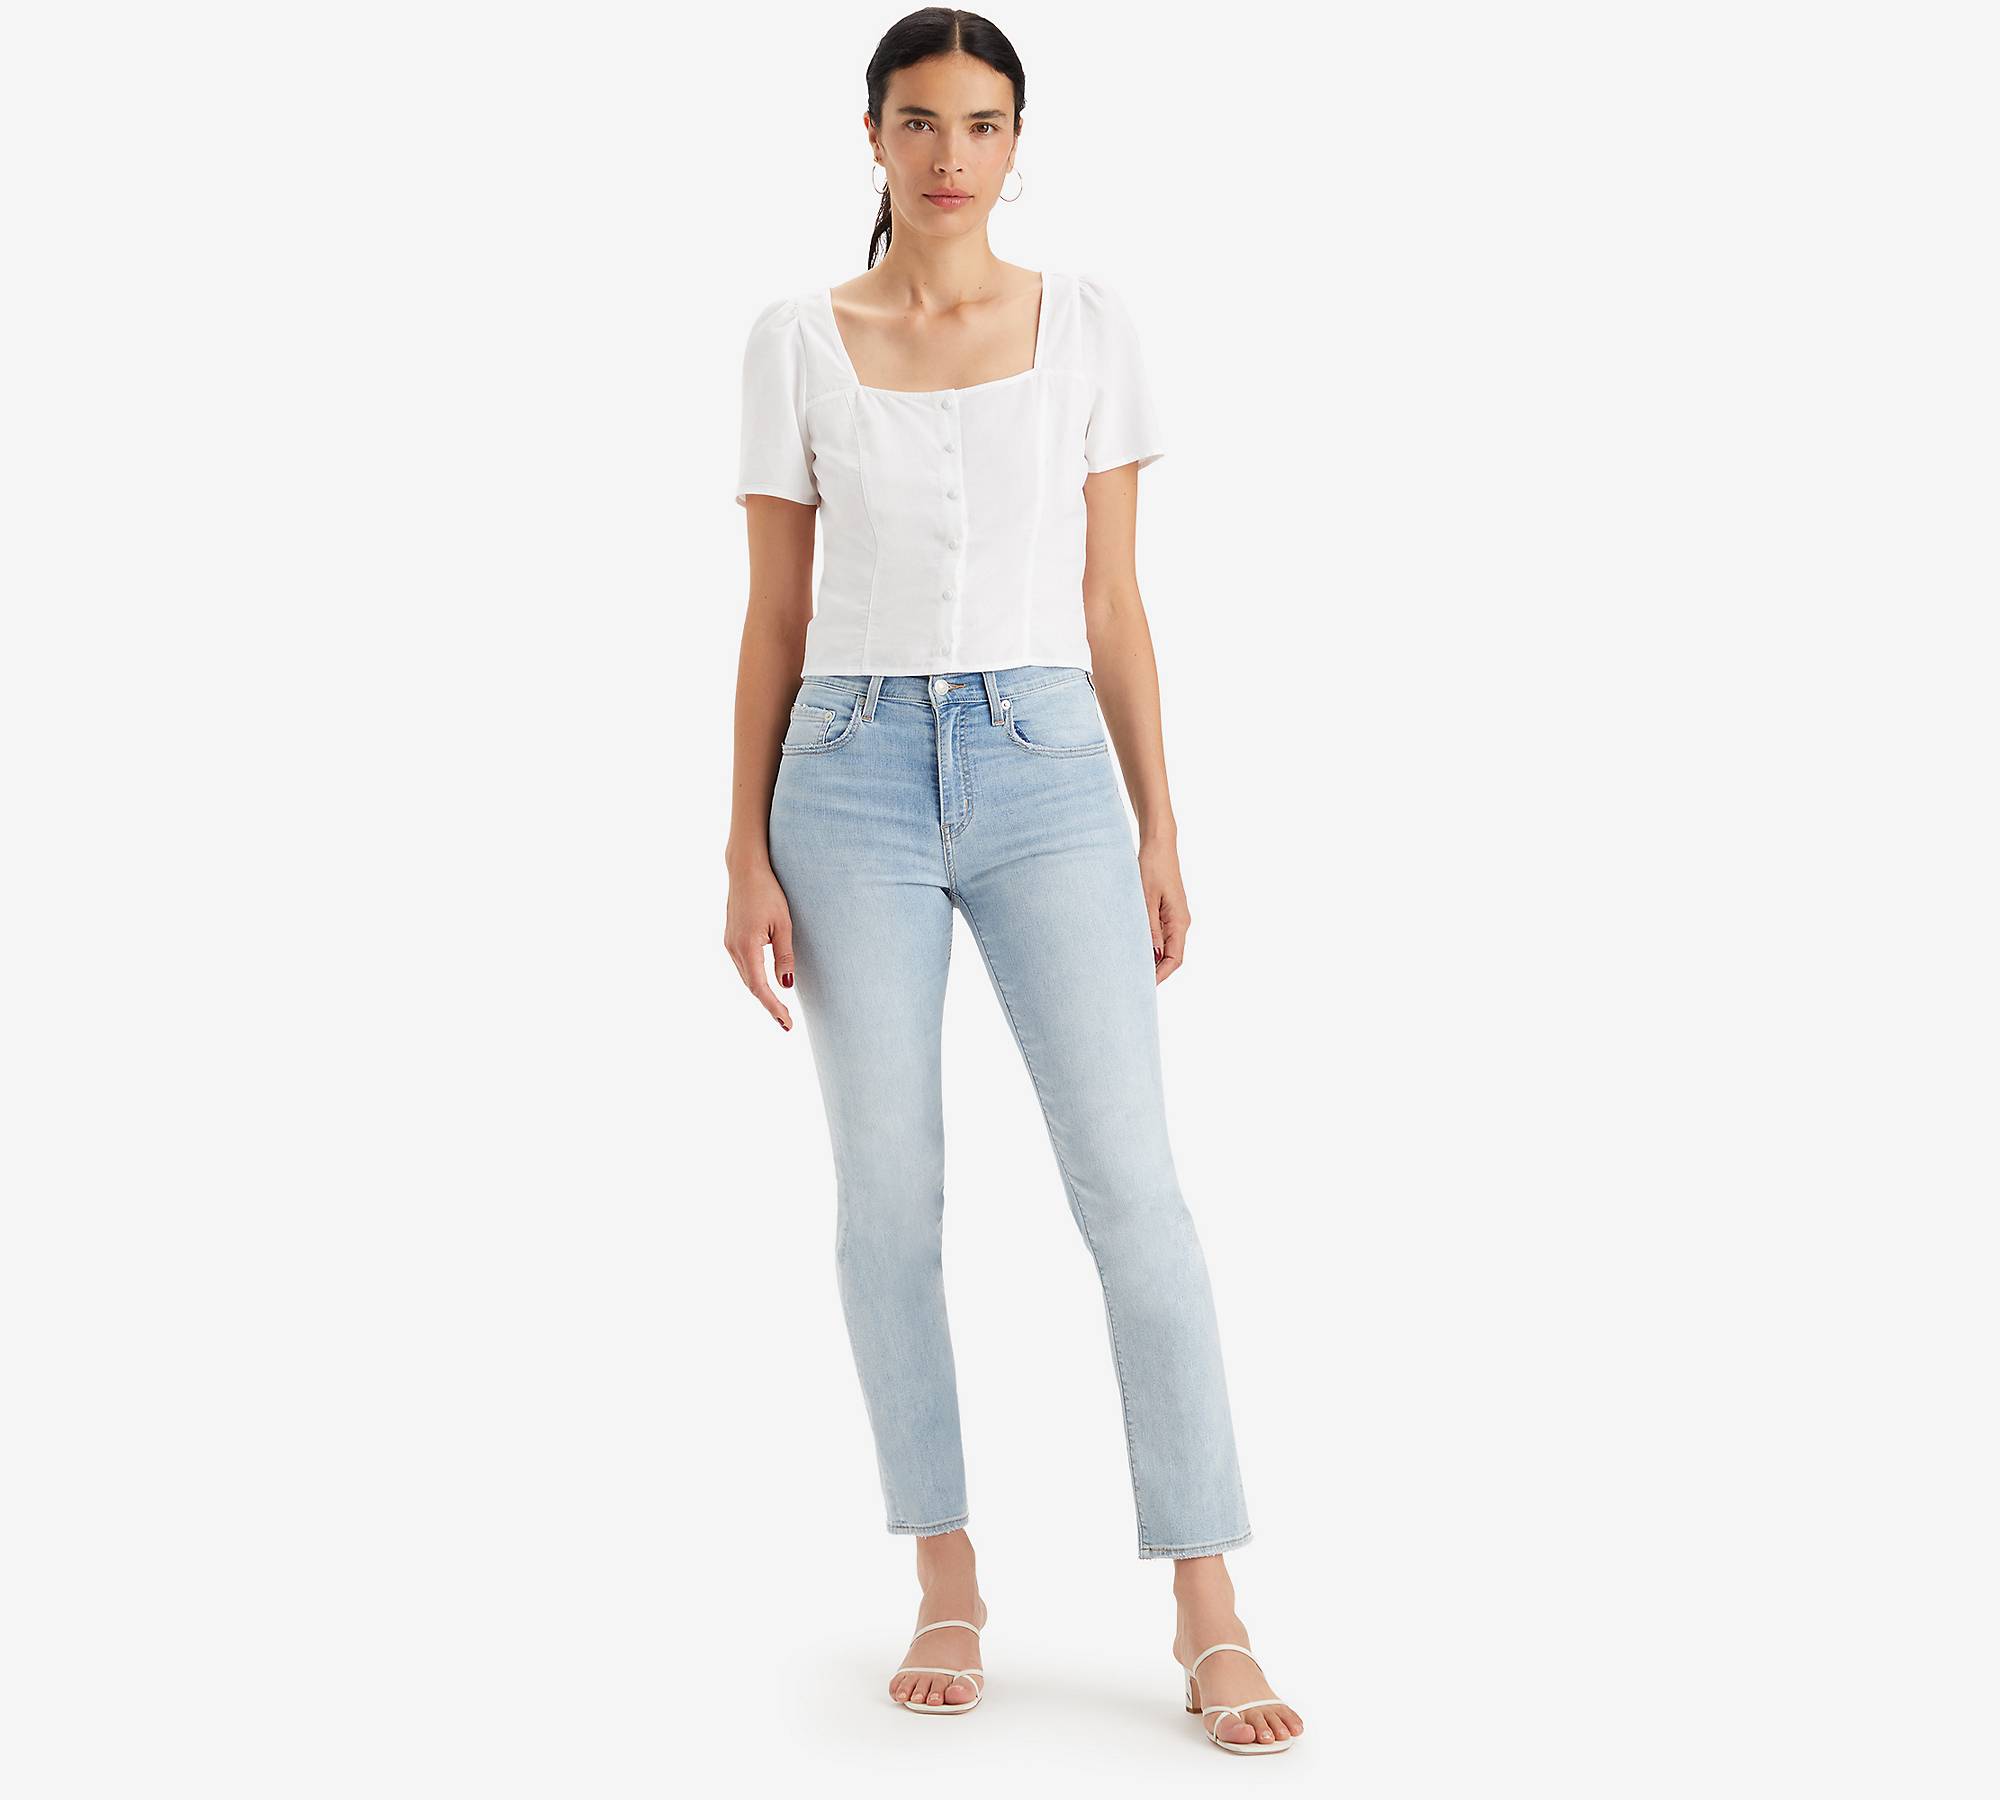 724™ rechte Lightweight jeans met hoge taille 1